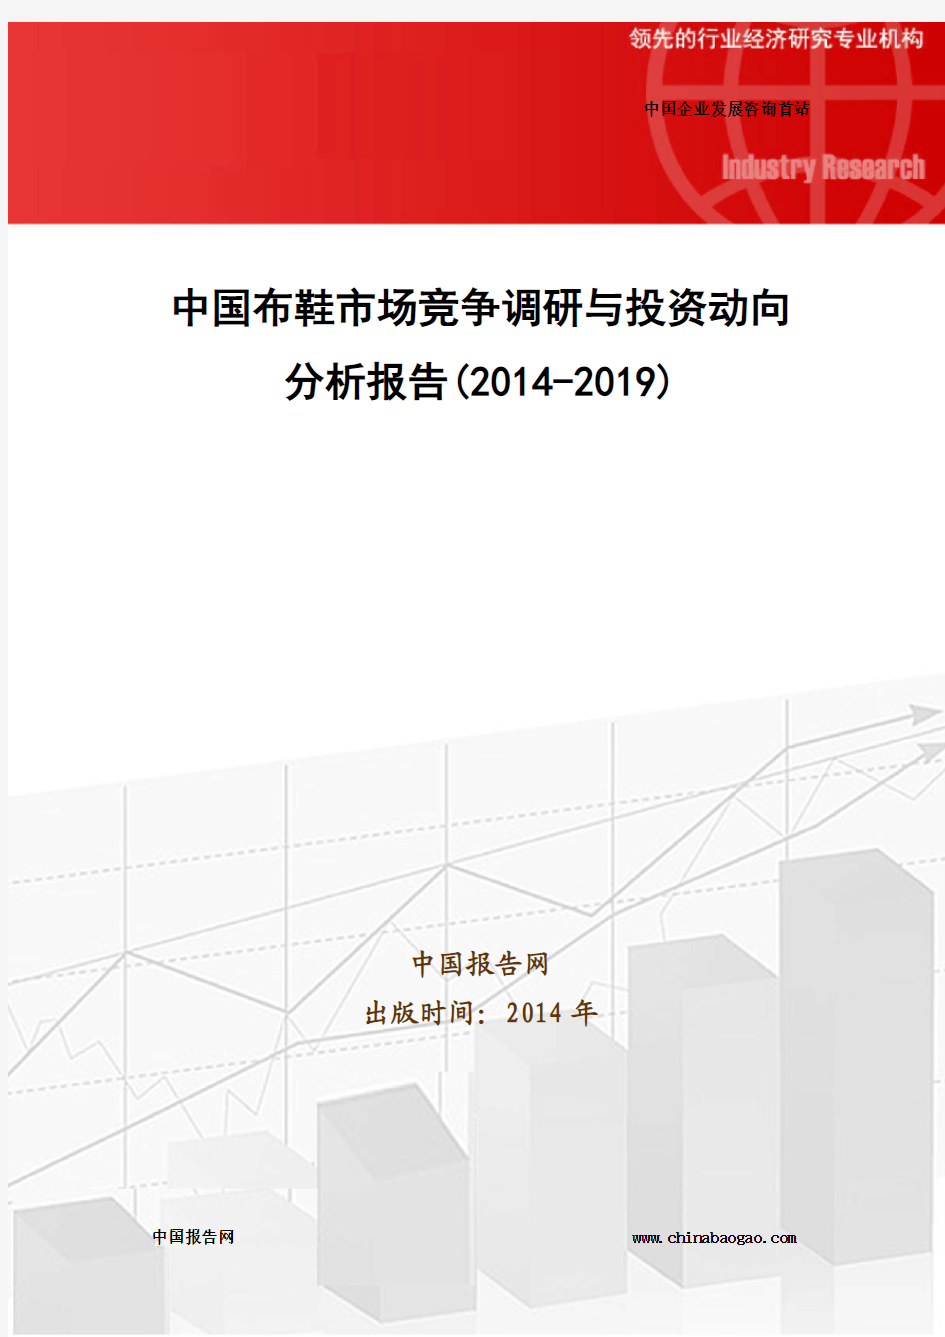 中国布鞋市场竞争调研与投资动向分析报告(2014-2019)